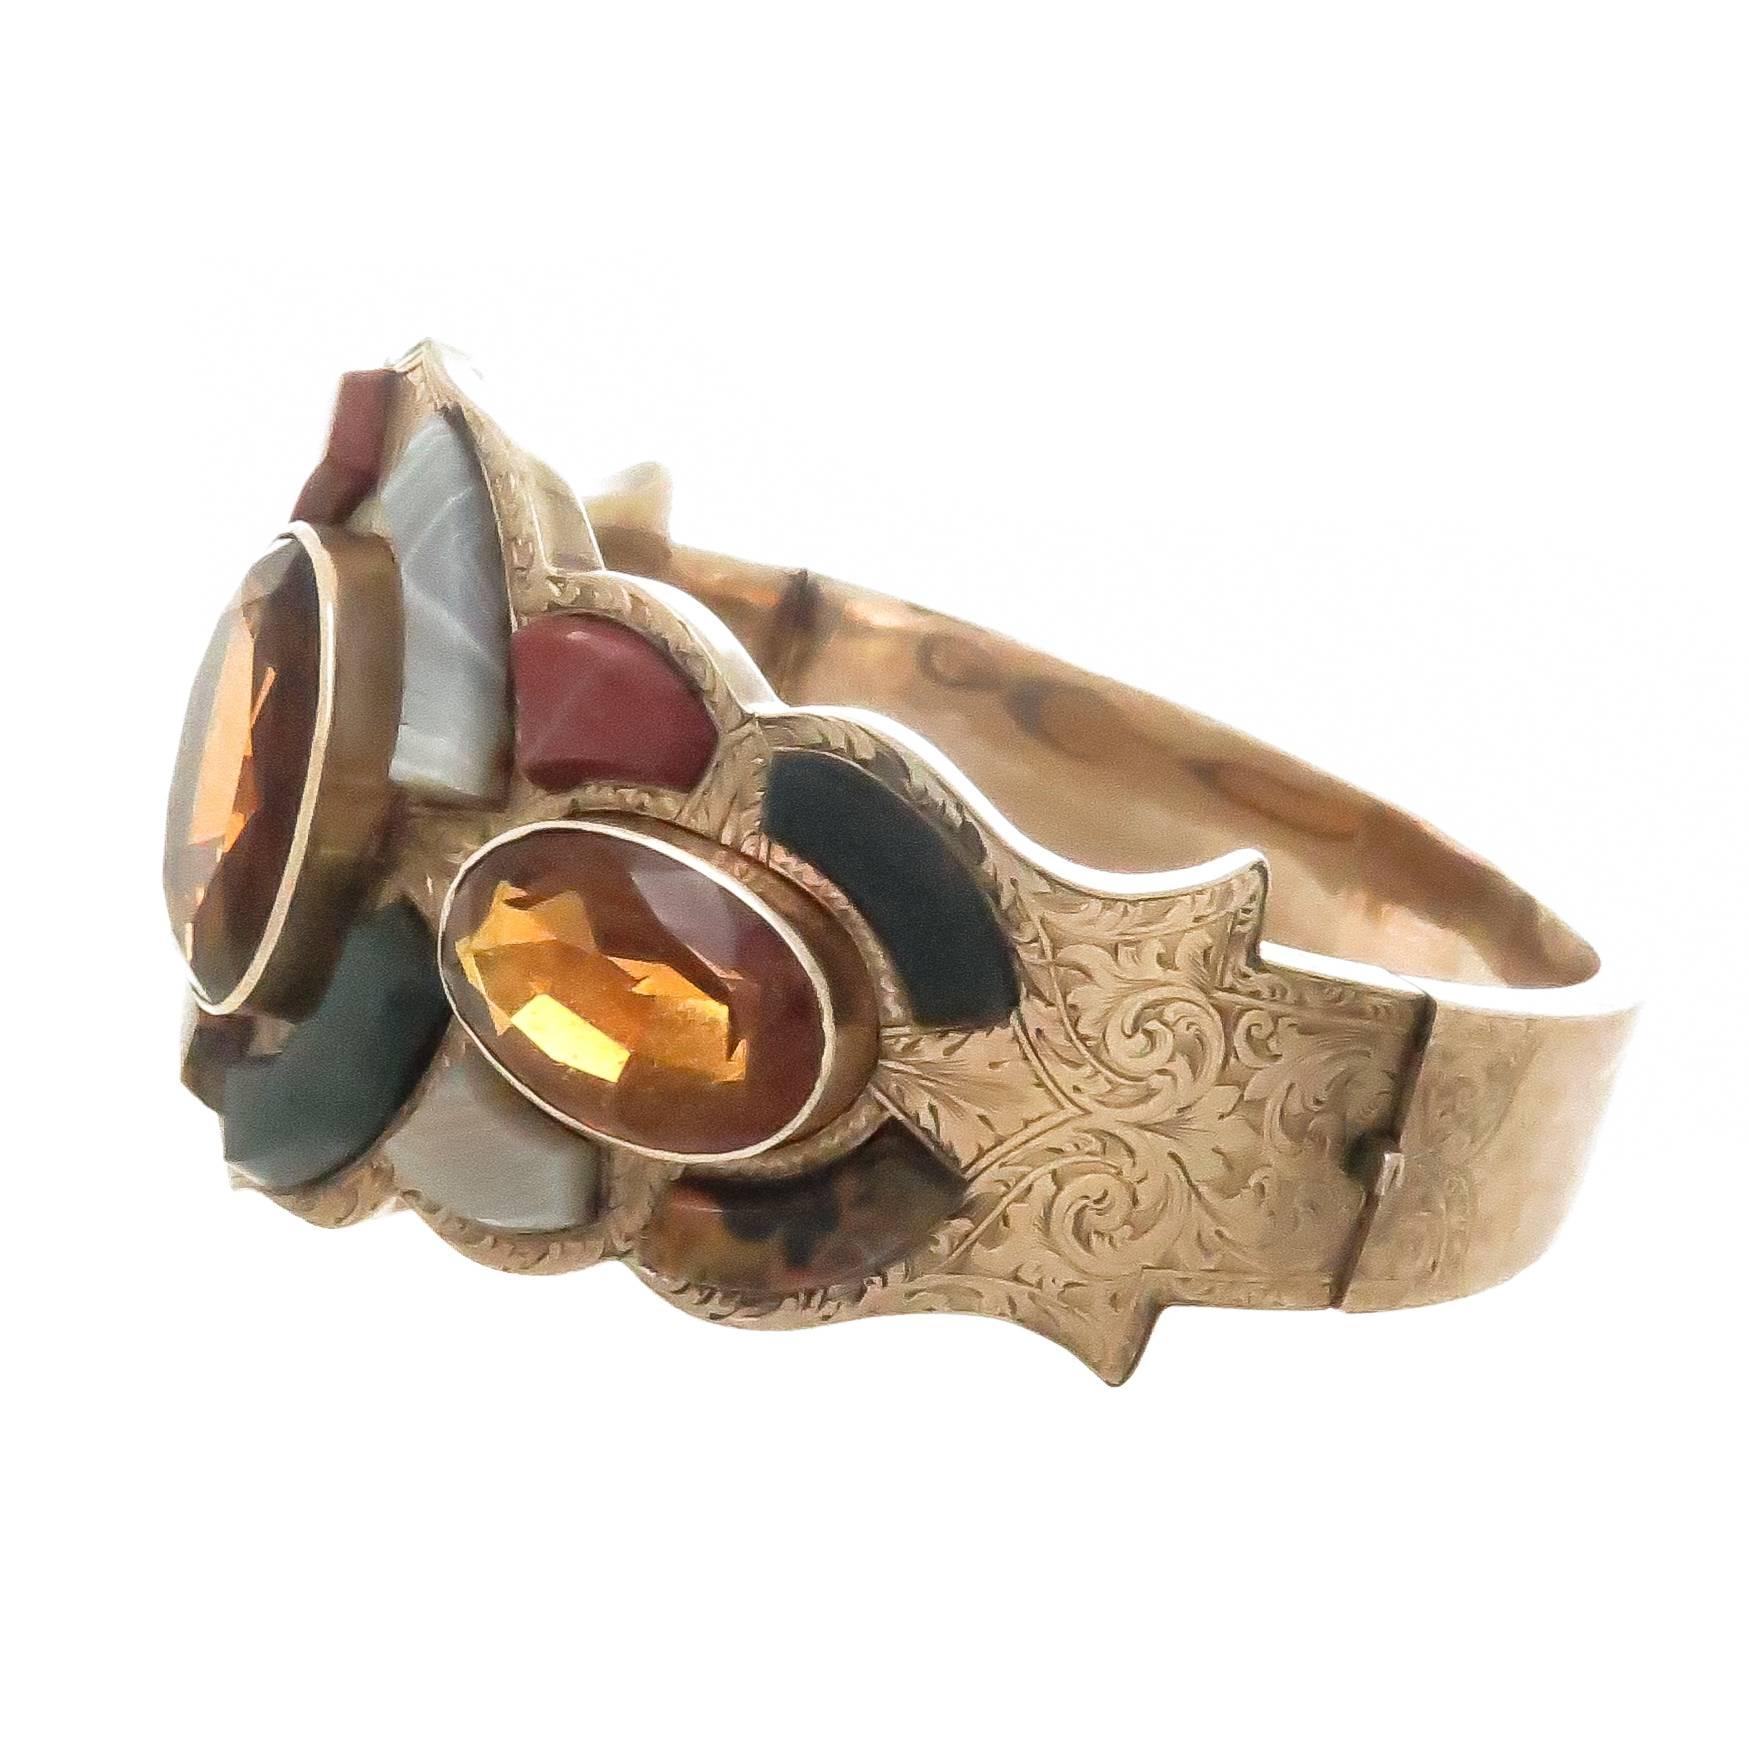 Circa 1890 Scottish 14K Rose Gold Bangle Bracelet, serti de pierres d'Agate écossaise de différentes couleurs et de 3 Citrines ovales de couleur fine. Le bracelet mesure 1 1/2 pouce de large au sommet et le tour de poignet intérieur est de 6 1/2